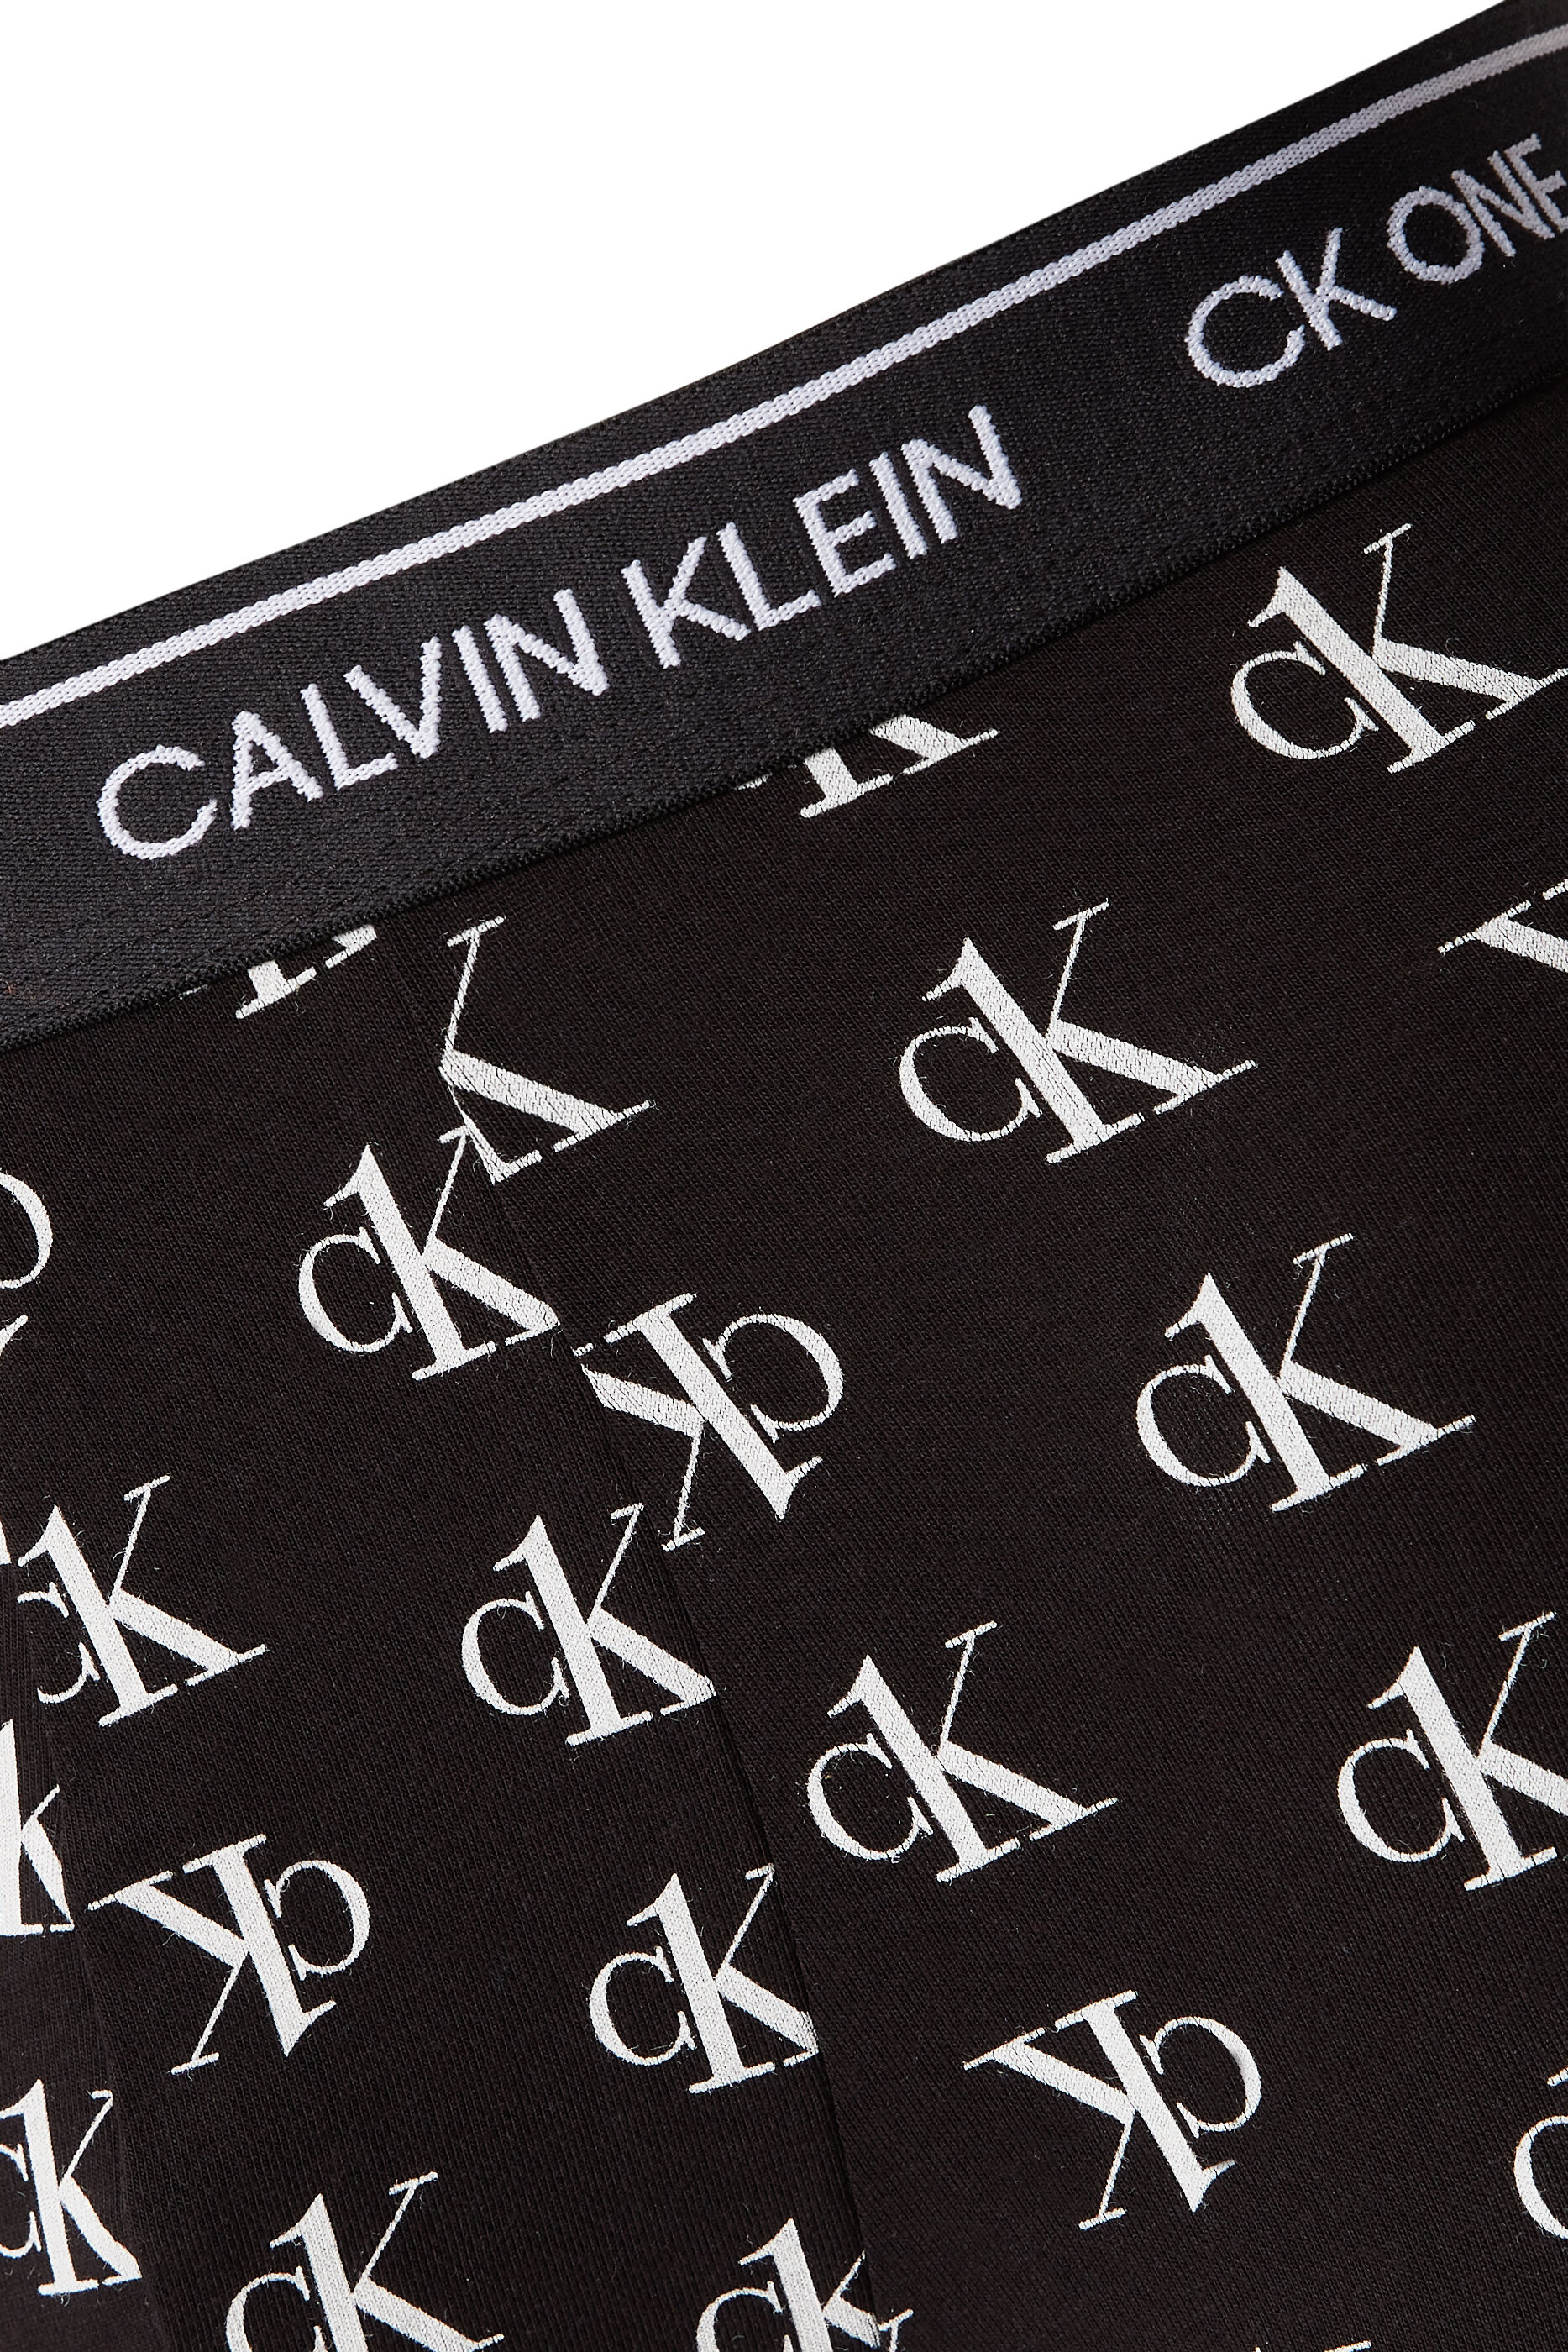 WOMEN FASHION Accessories Other-accesories Beige Beige Single discount 90% Calvin Klein other-accesories 